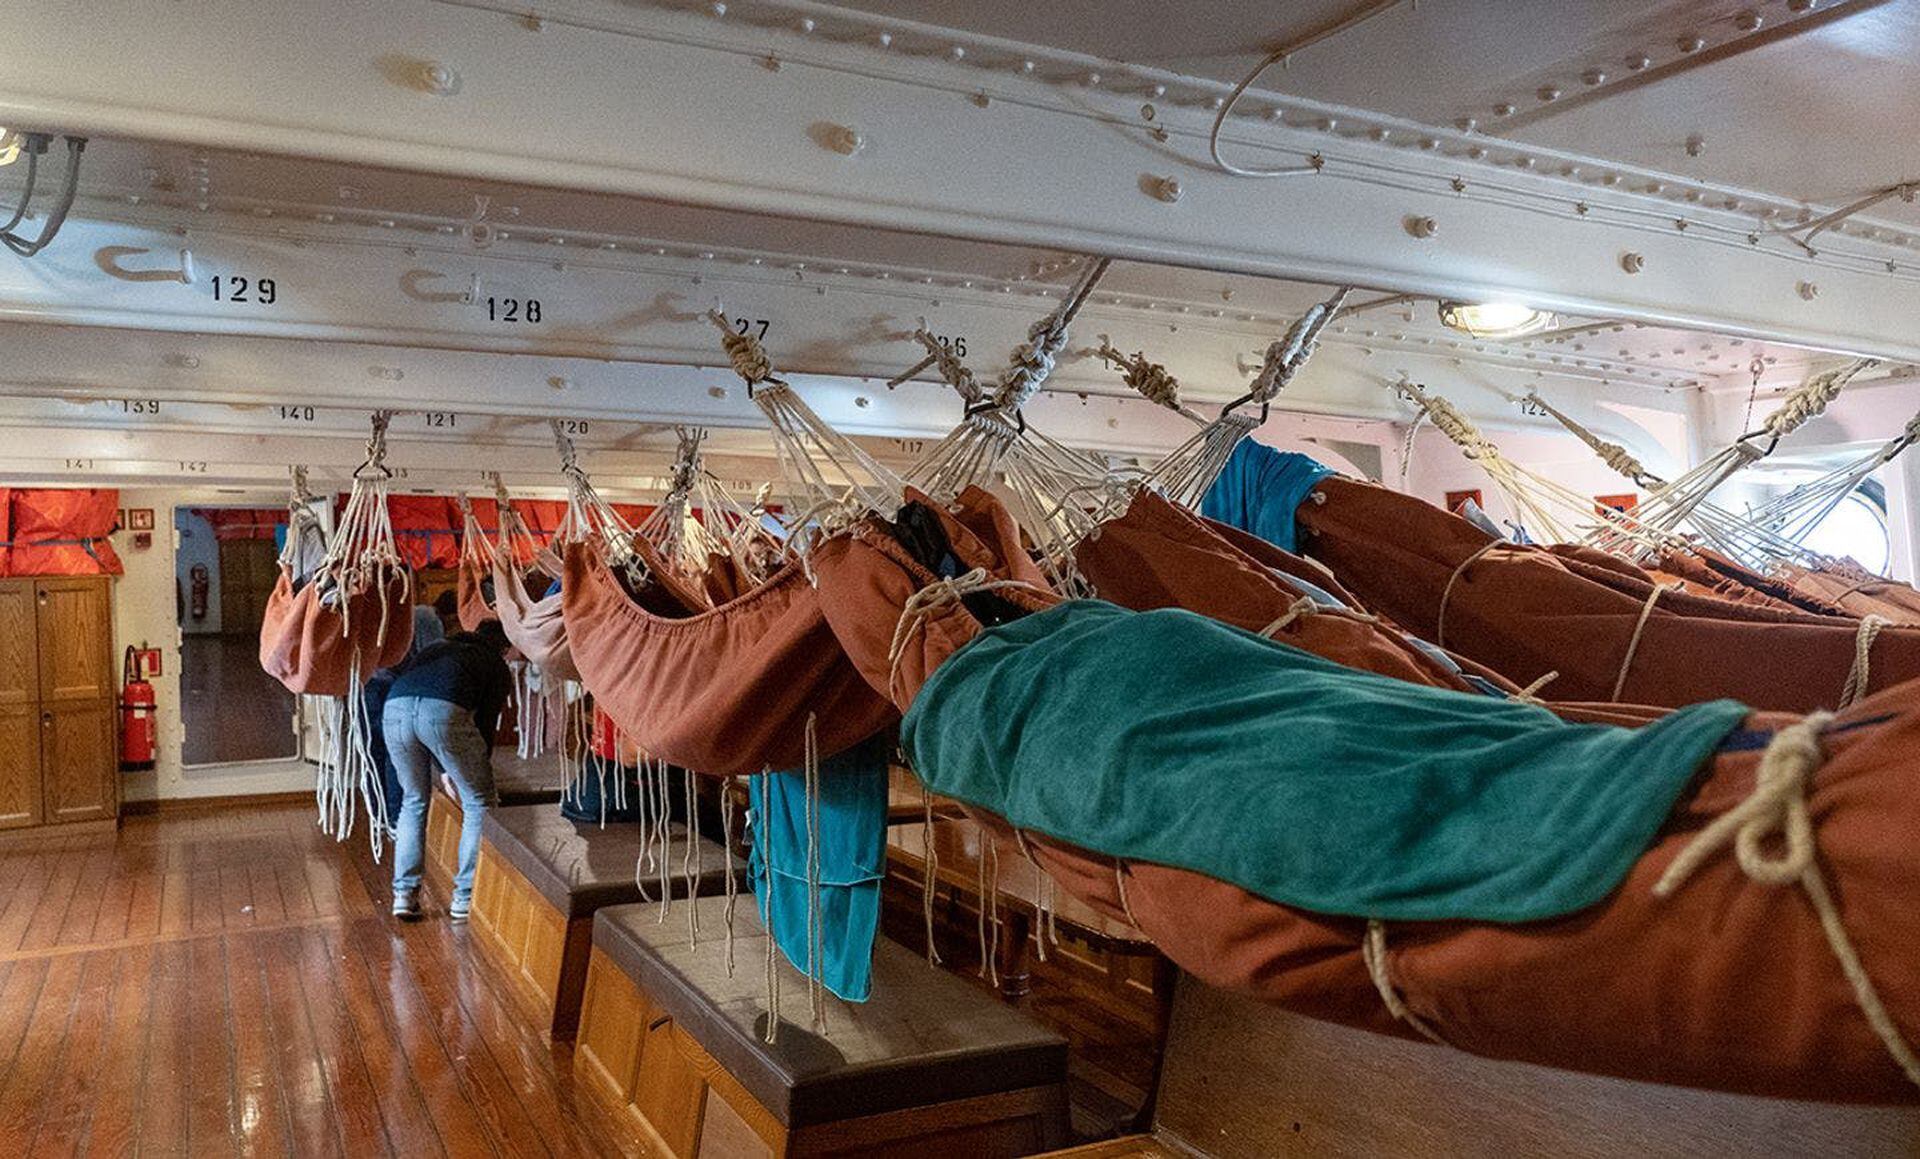 El barco propone dormir mayormente en hamacas.